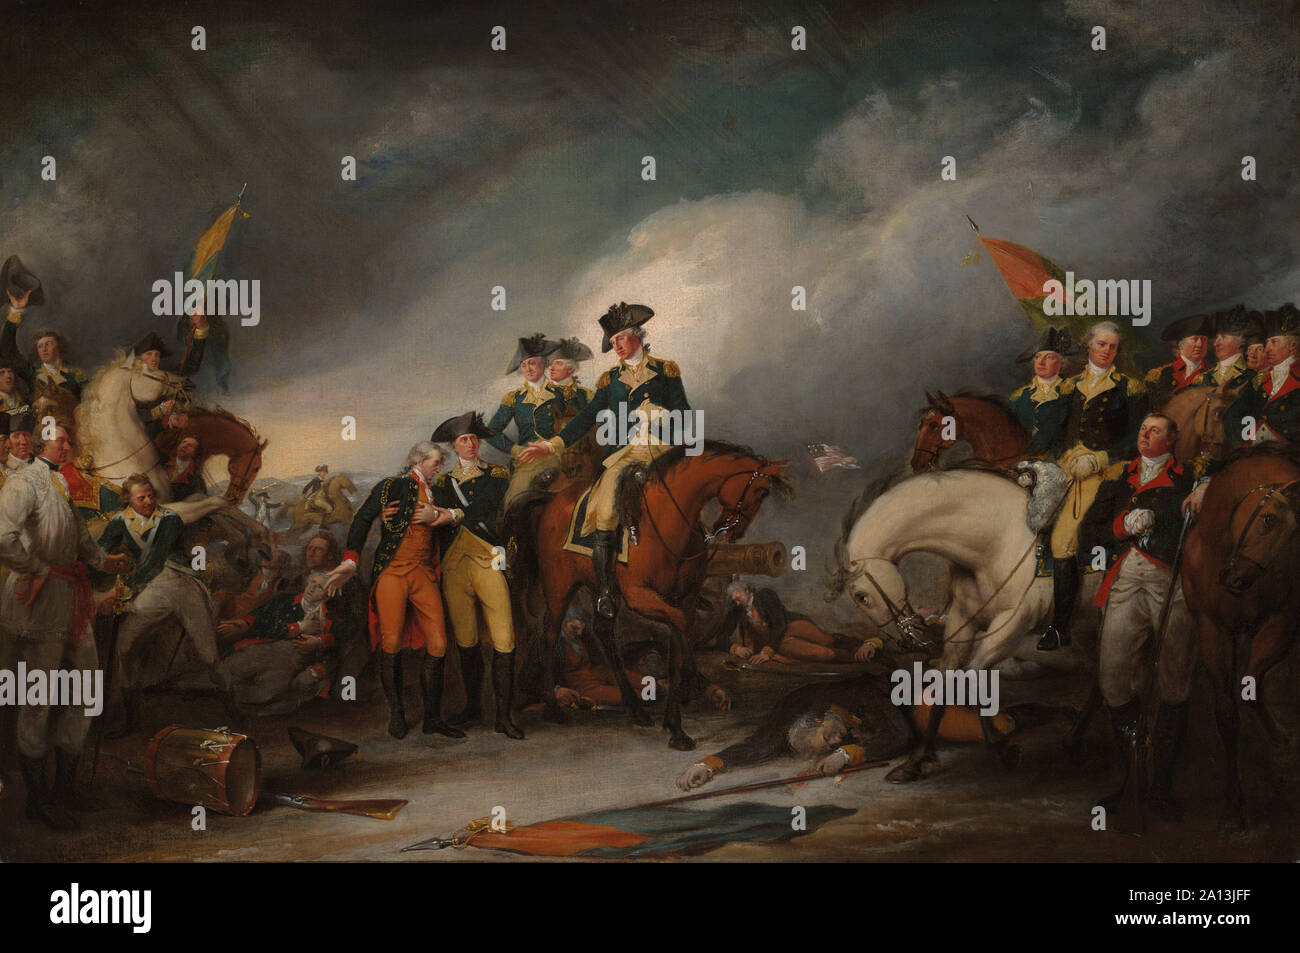 La guerra rivoluzionaria americana pittura della cattura del Hessians a Trenton, Dicembre 26, 1776. Foto Stock